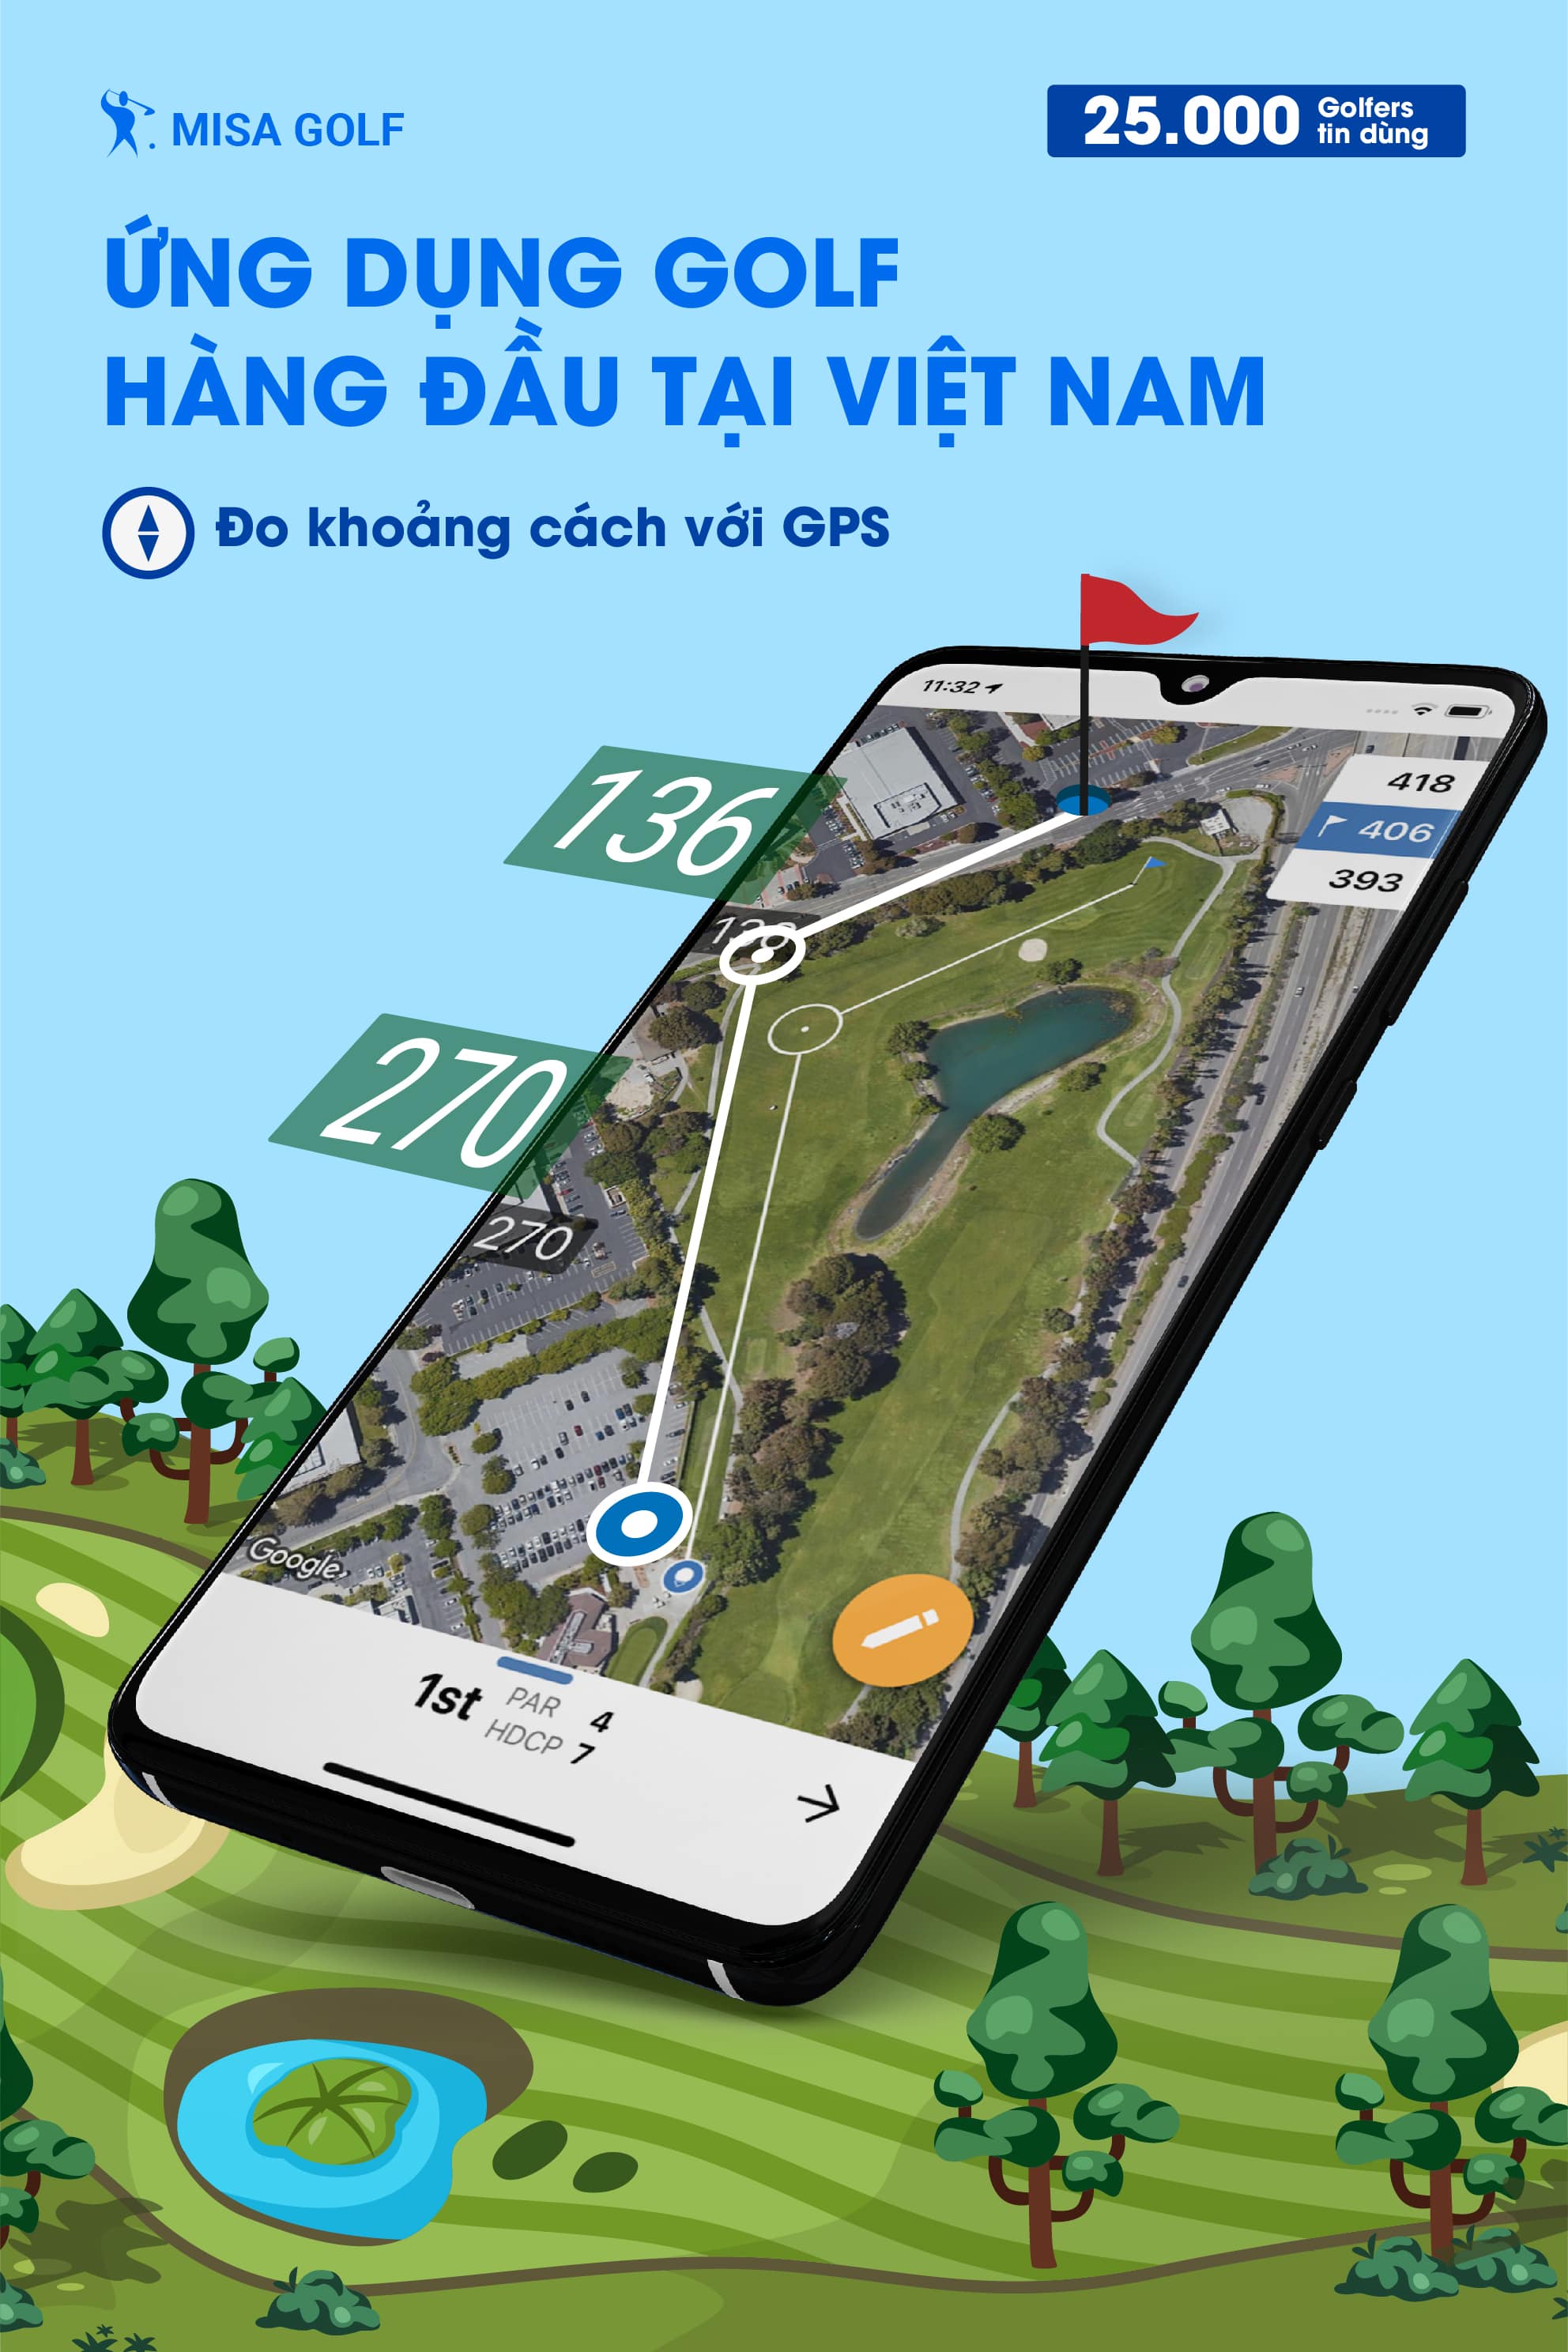 Với Golf GPS của MISA Golf, đo khoảng cách trên sân chưa bao giờ dễ dàng đến thế